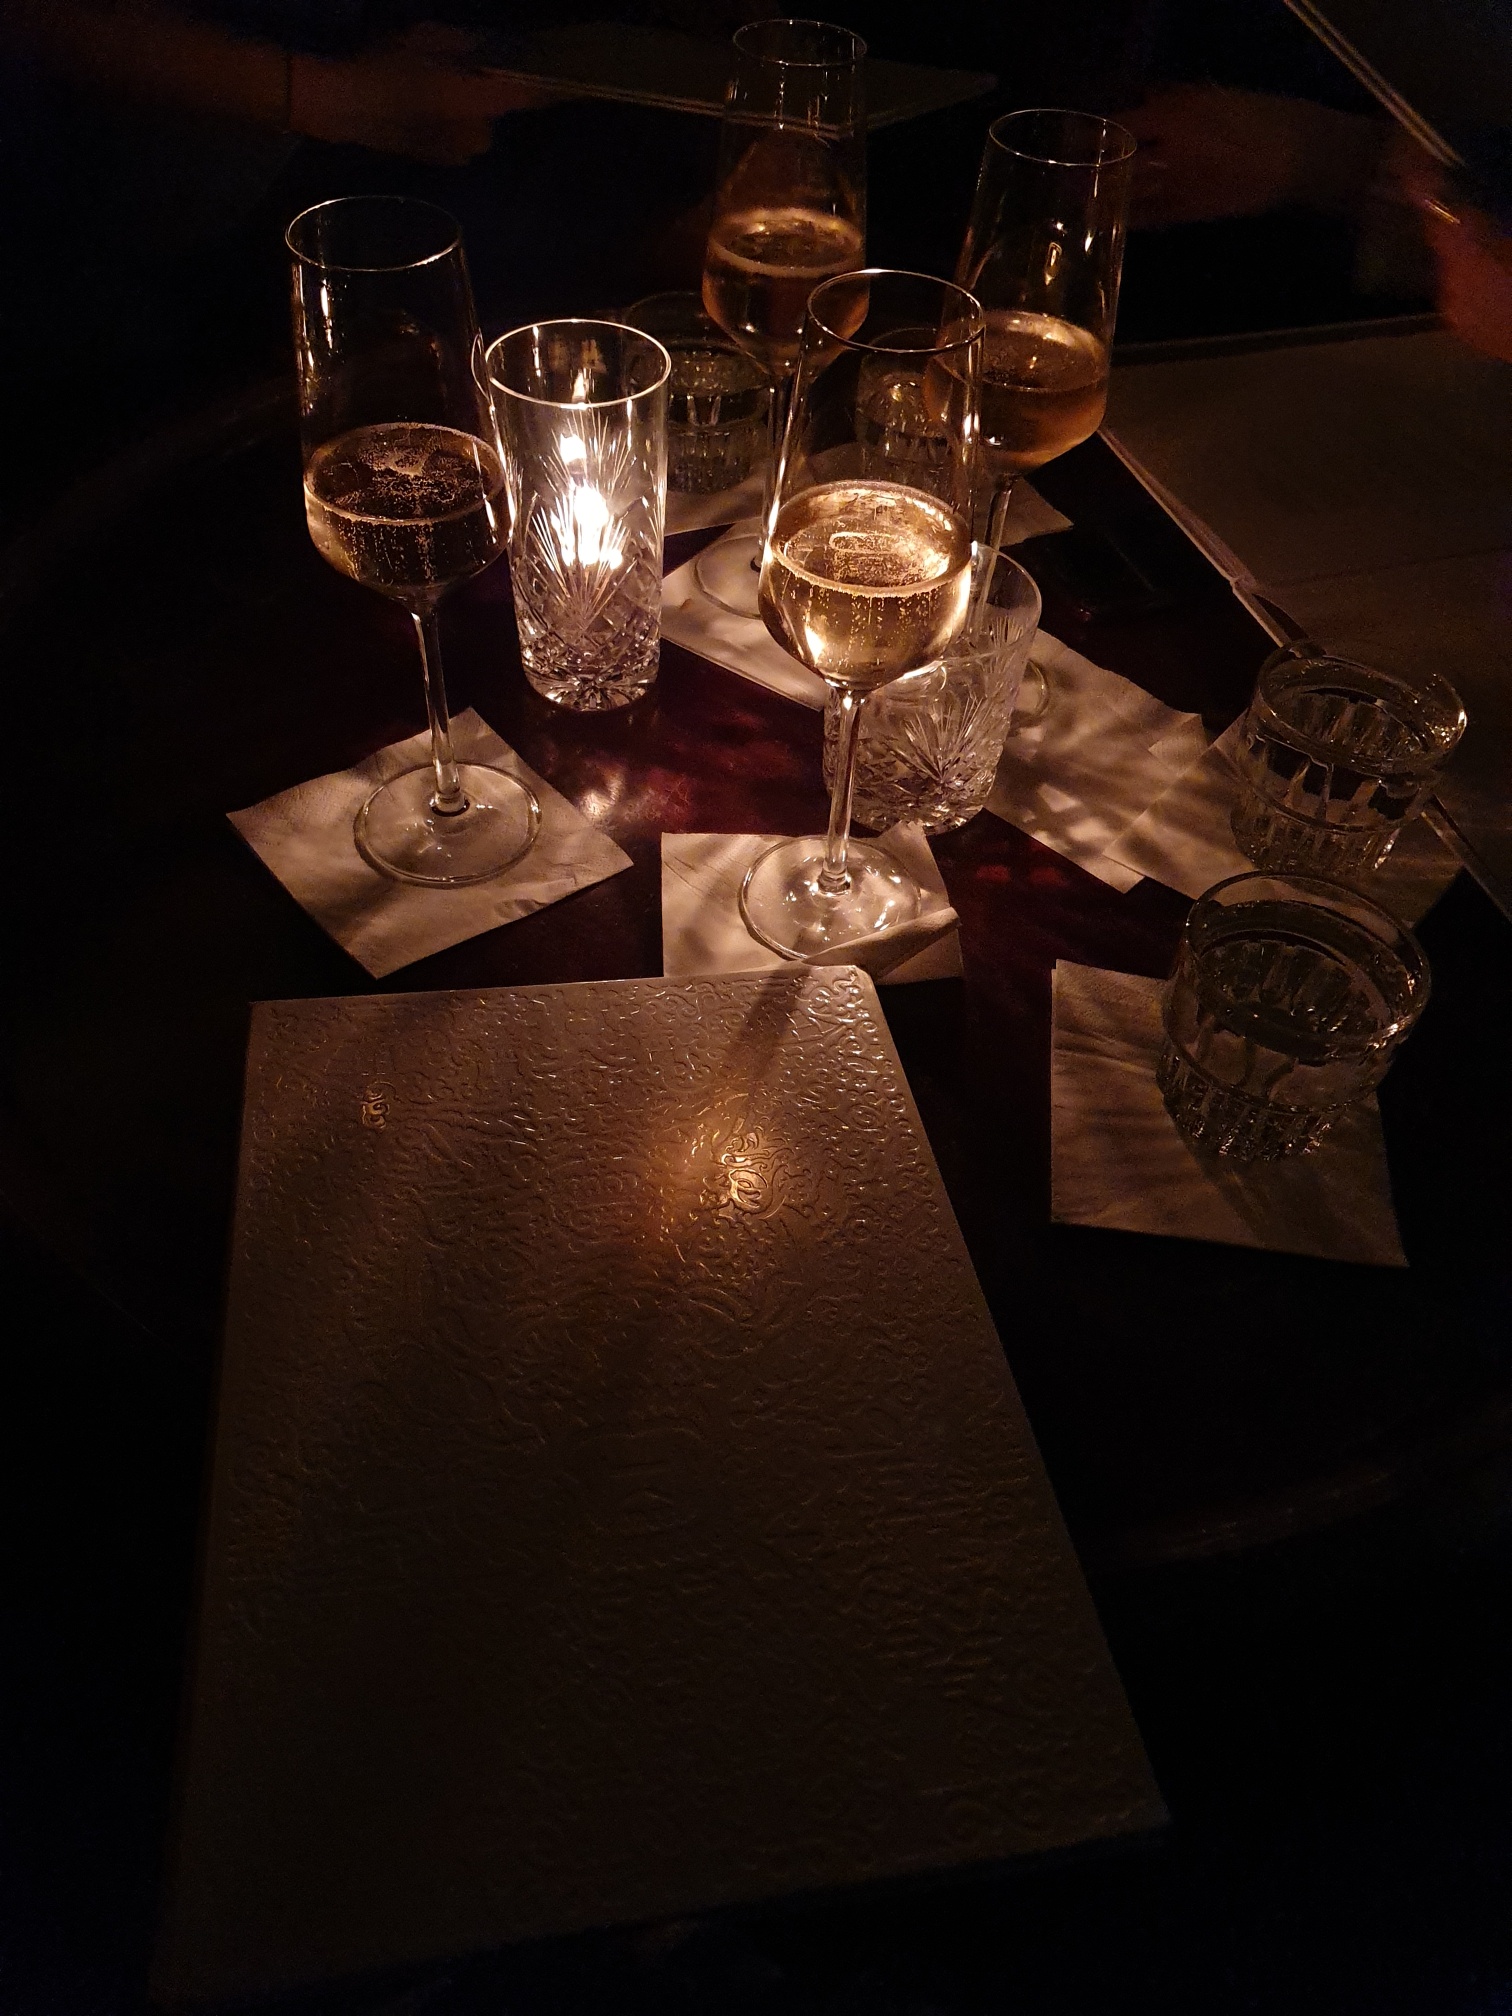 EveForEvigt fav drinks: beer, gin, rose' champagne image: 5